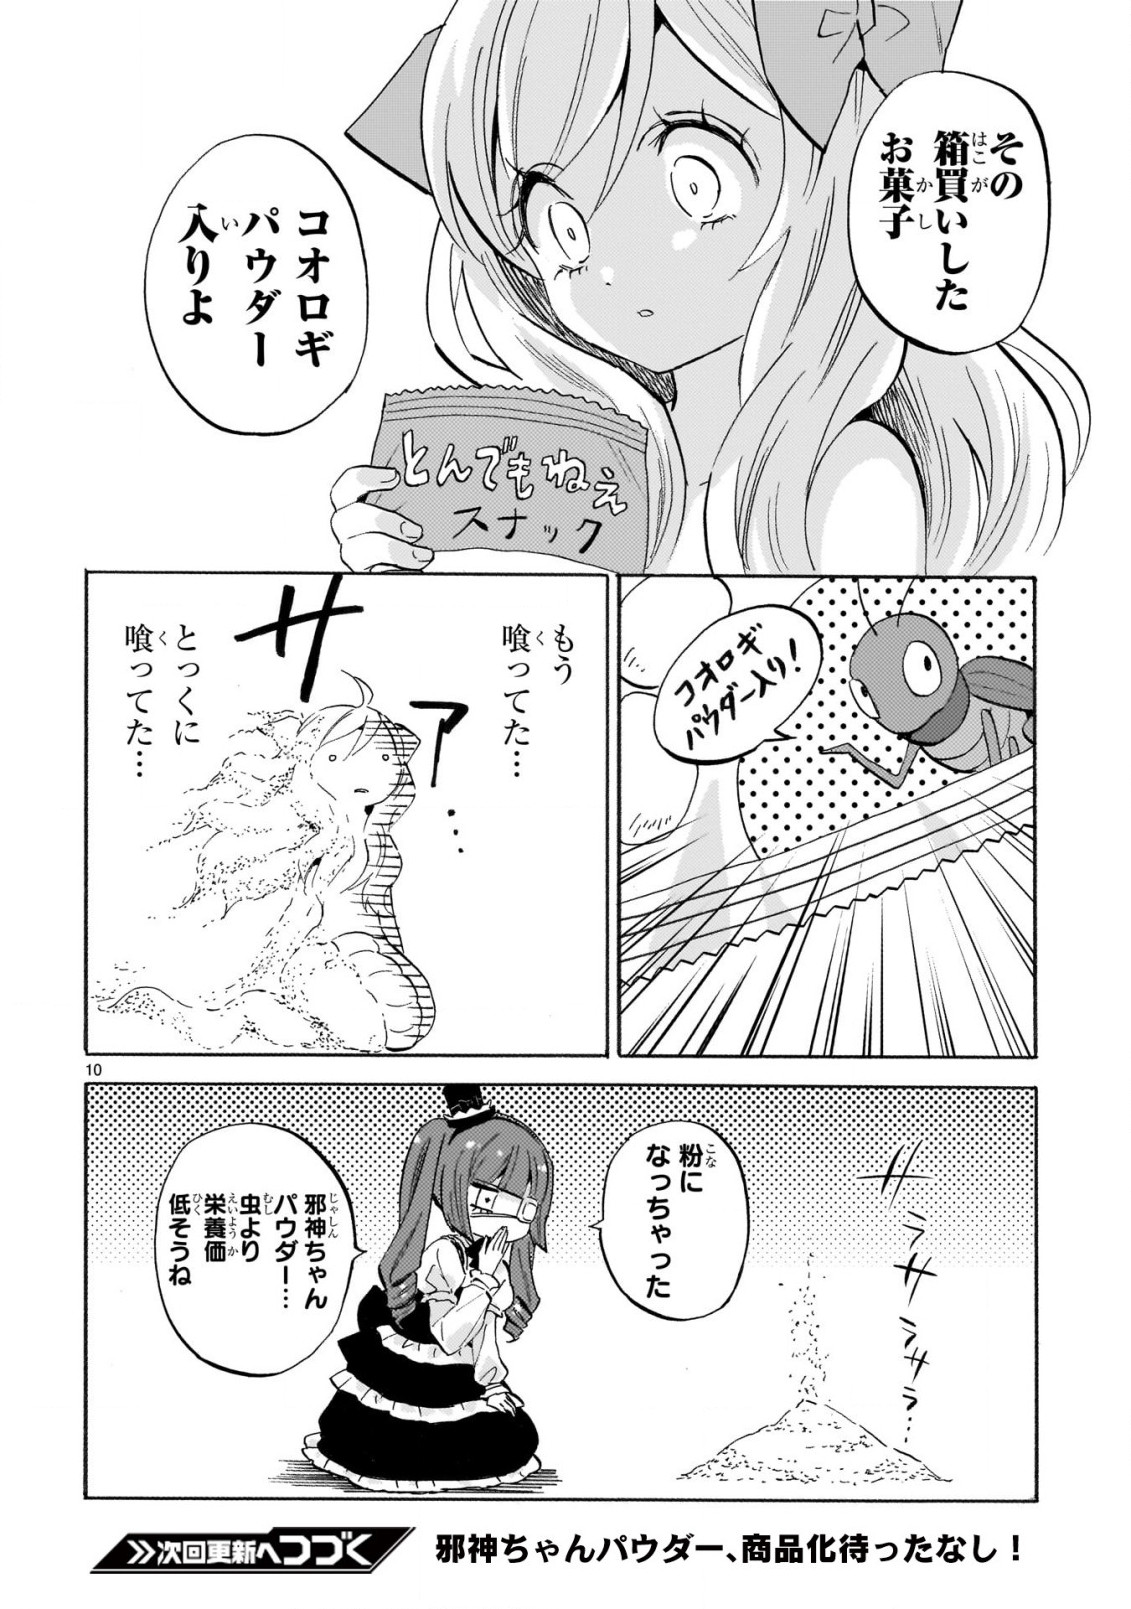 Jashin-chan Dropkick - Chapter 230 - Page 10